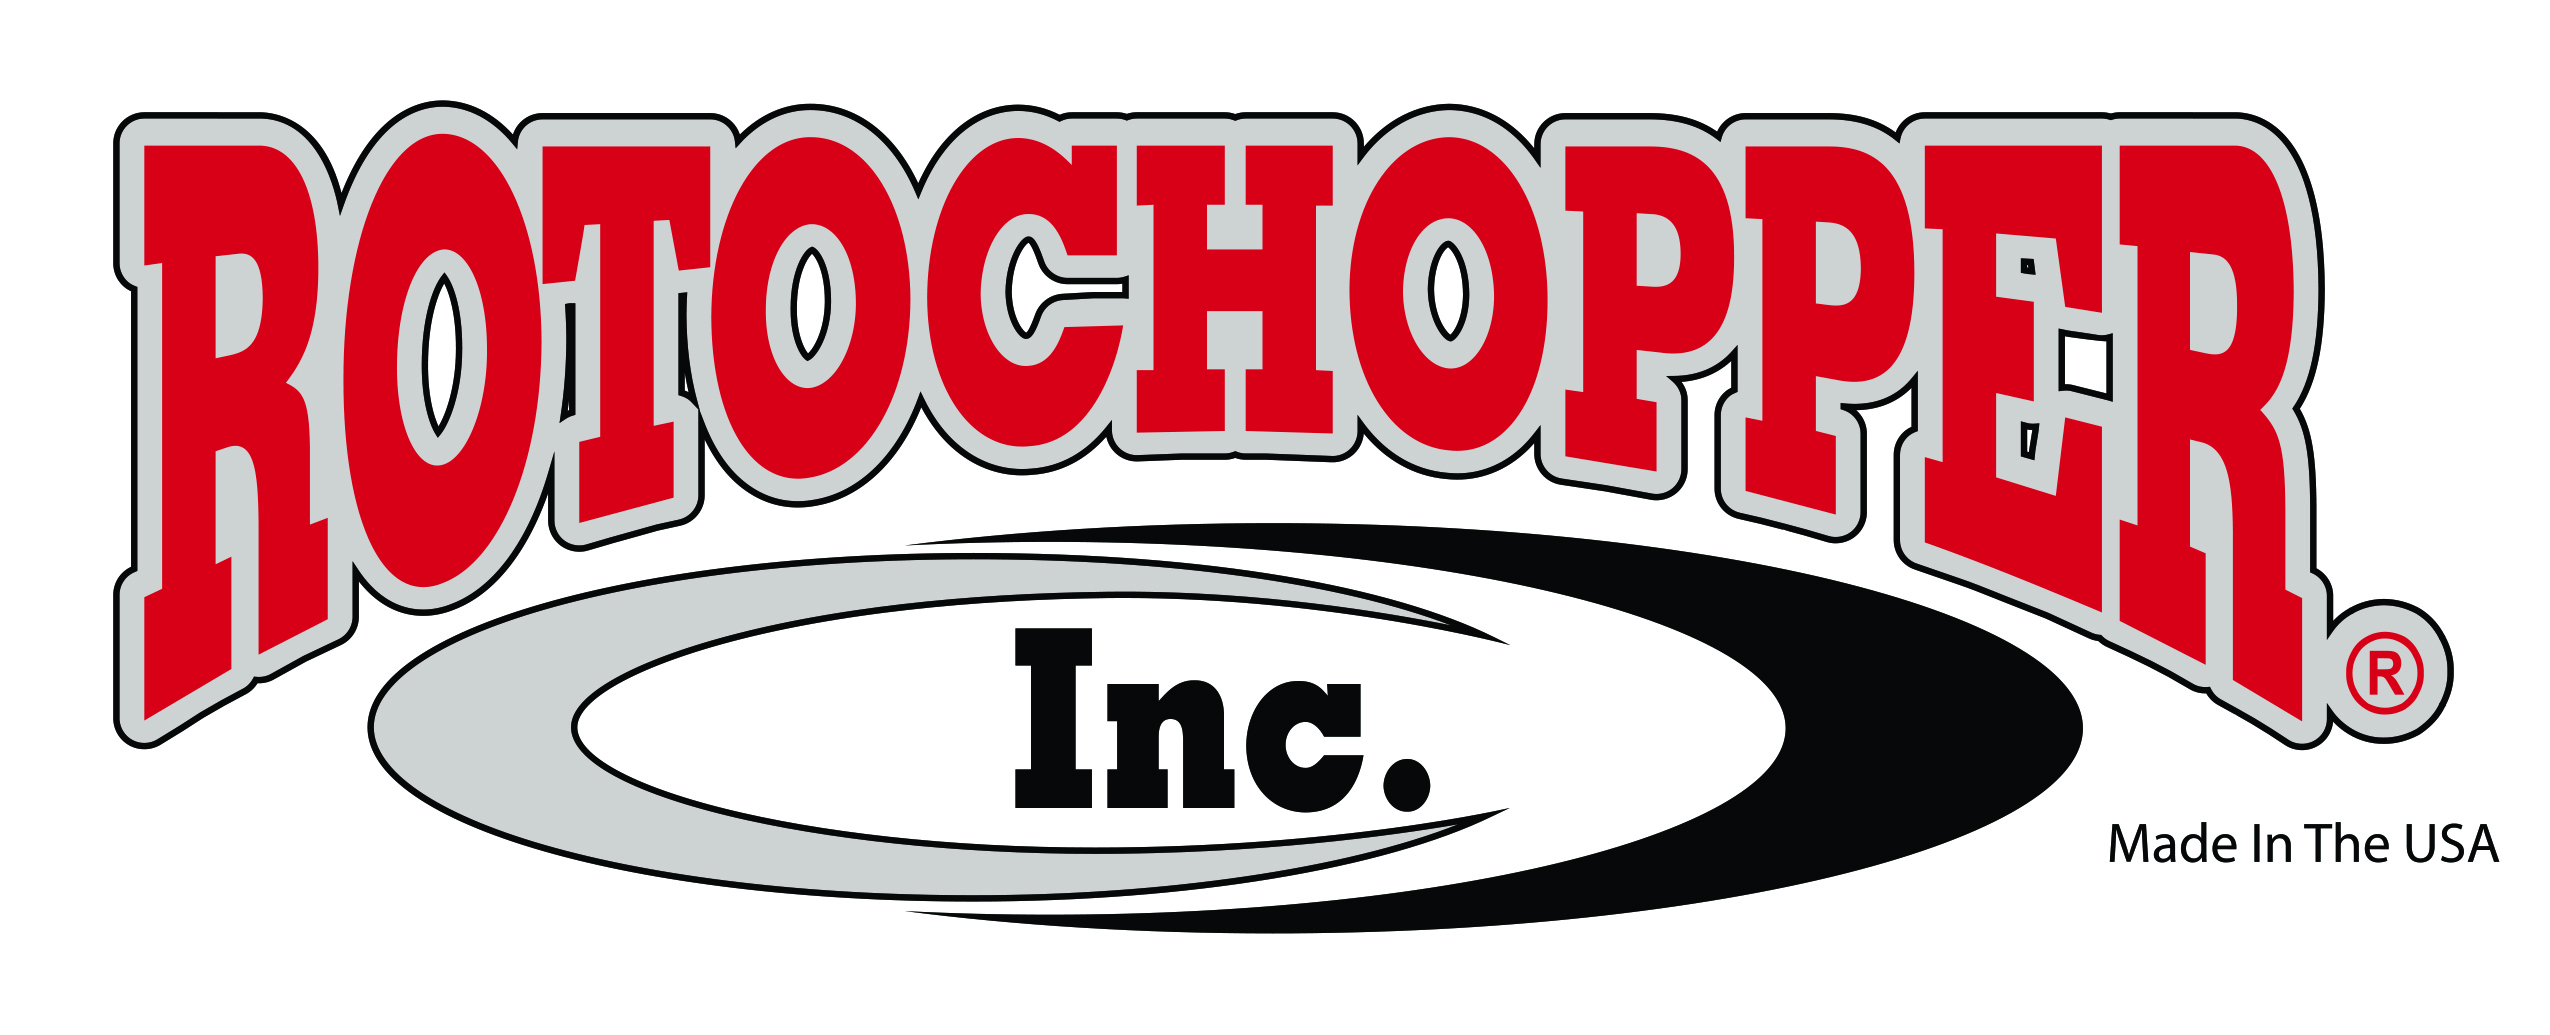 Rotochopper Inc. logo